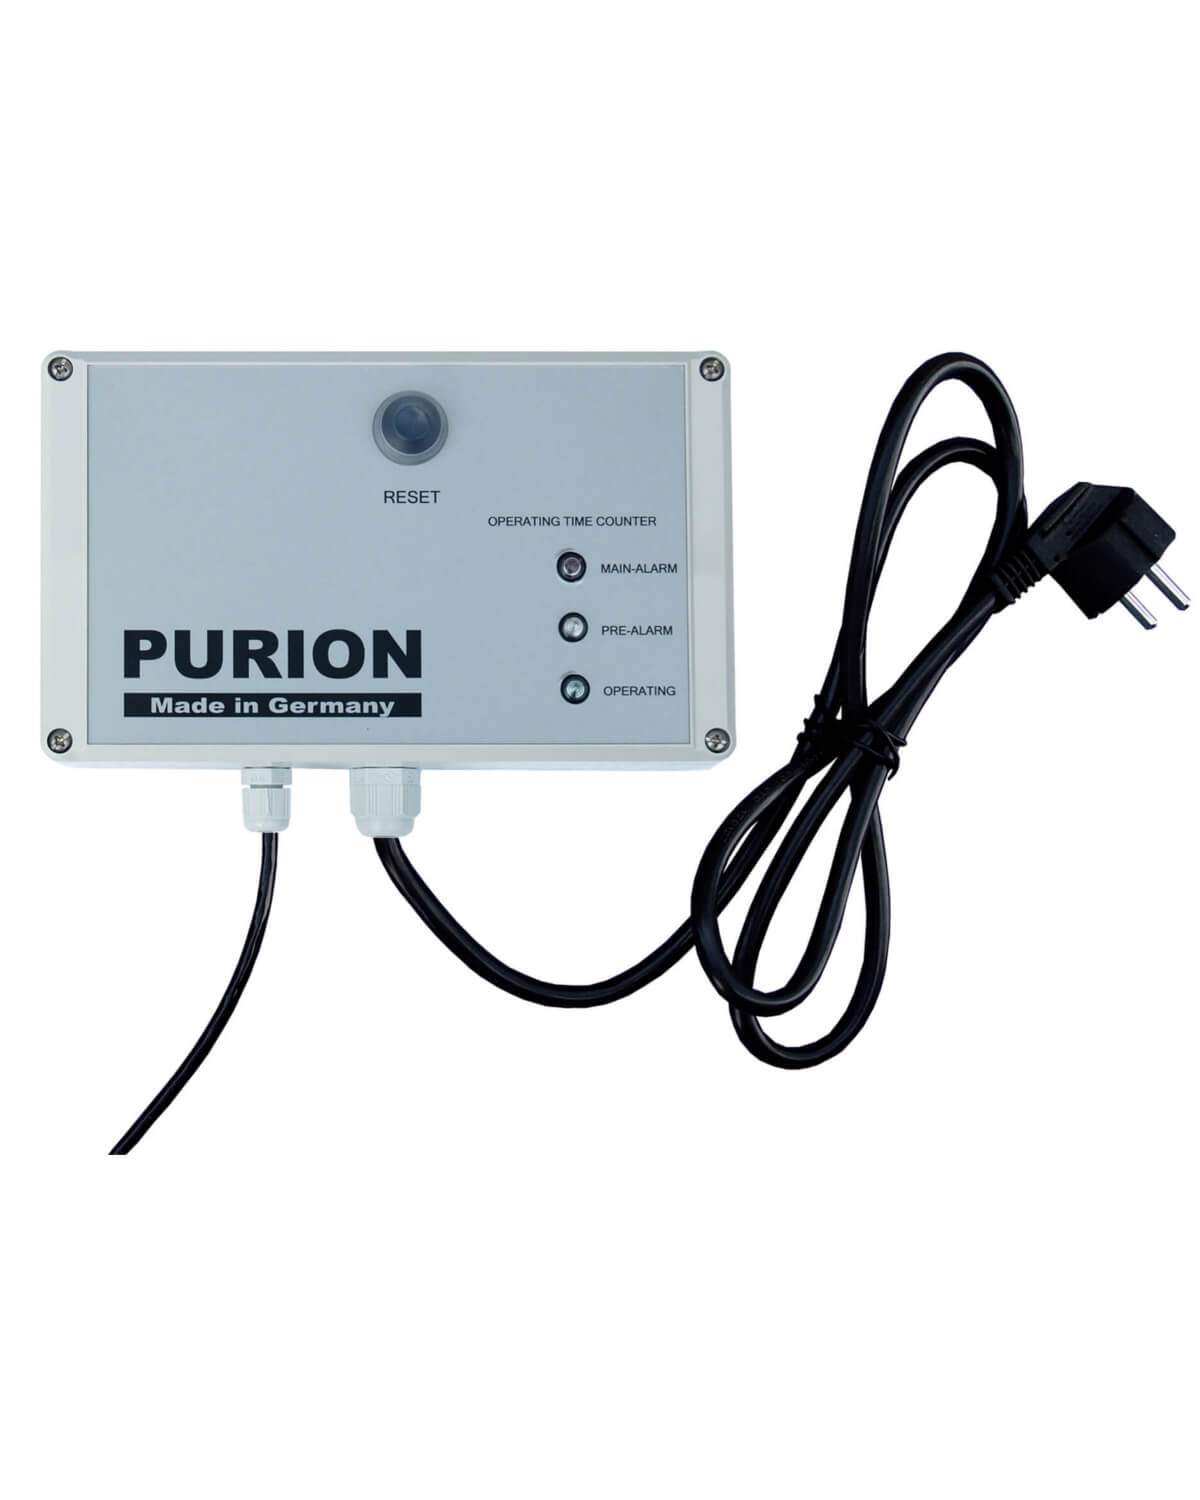 Der PURION 500 PRO OTC Plus der PURION GmbH nutzt UV-C-Strahlung zur effektiven Desinfizierung von Oberflächen.